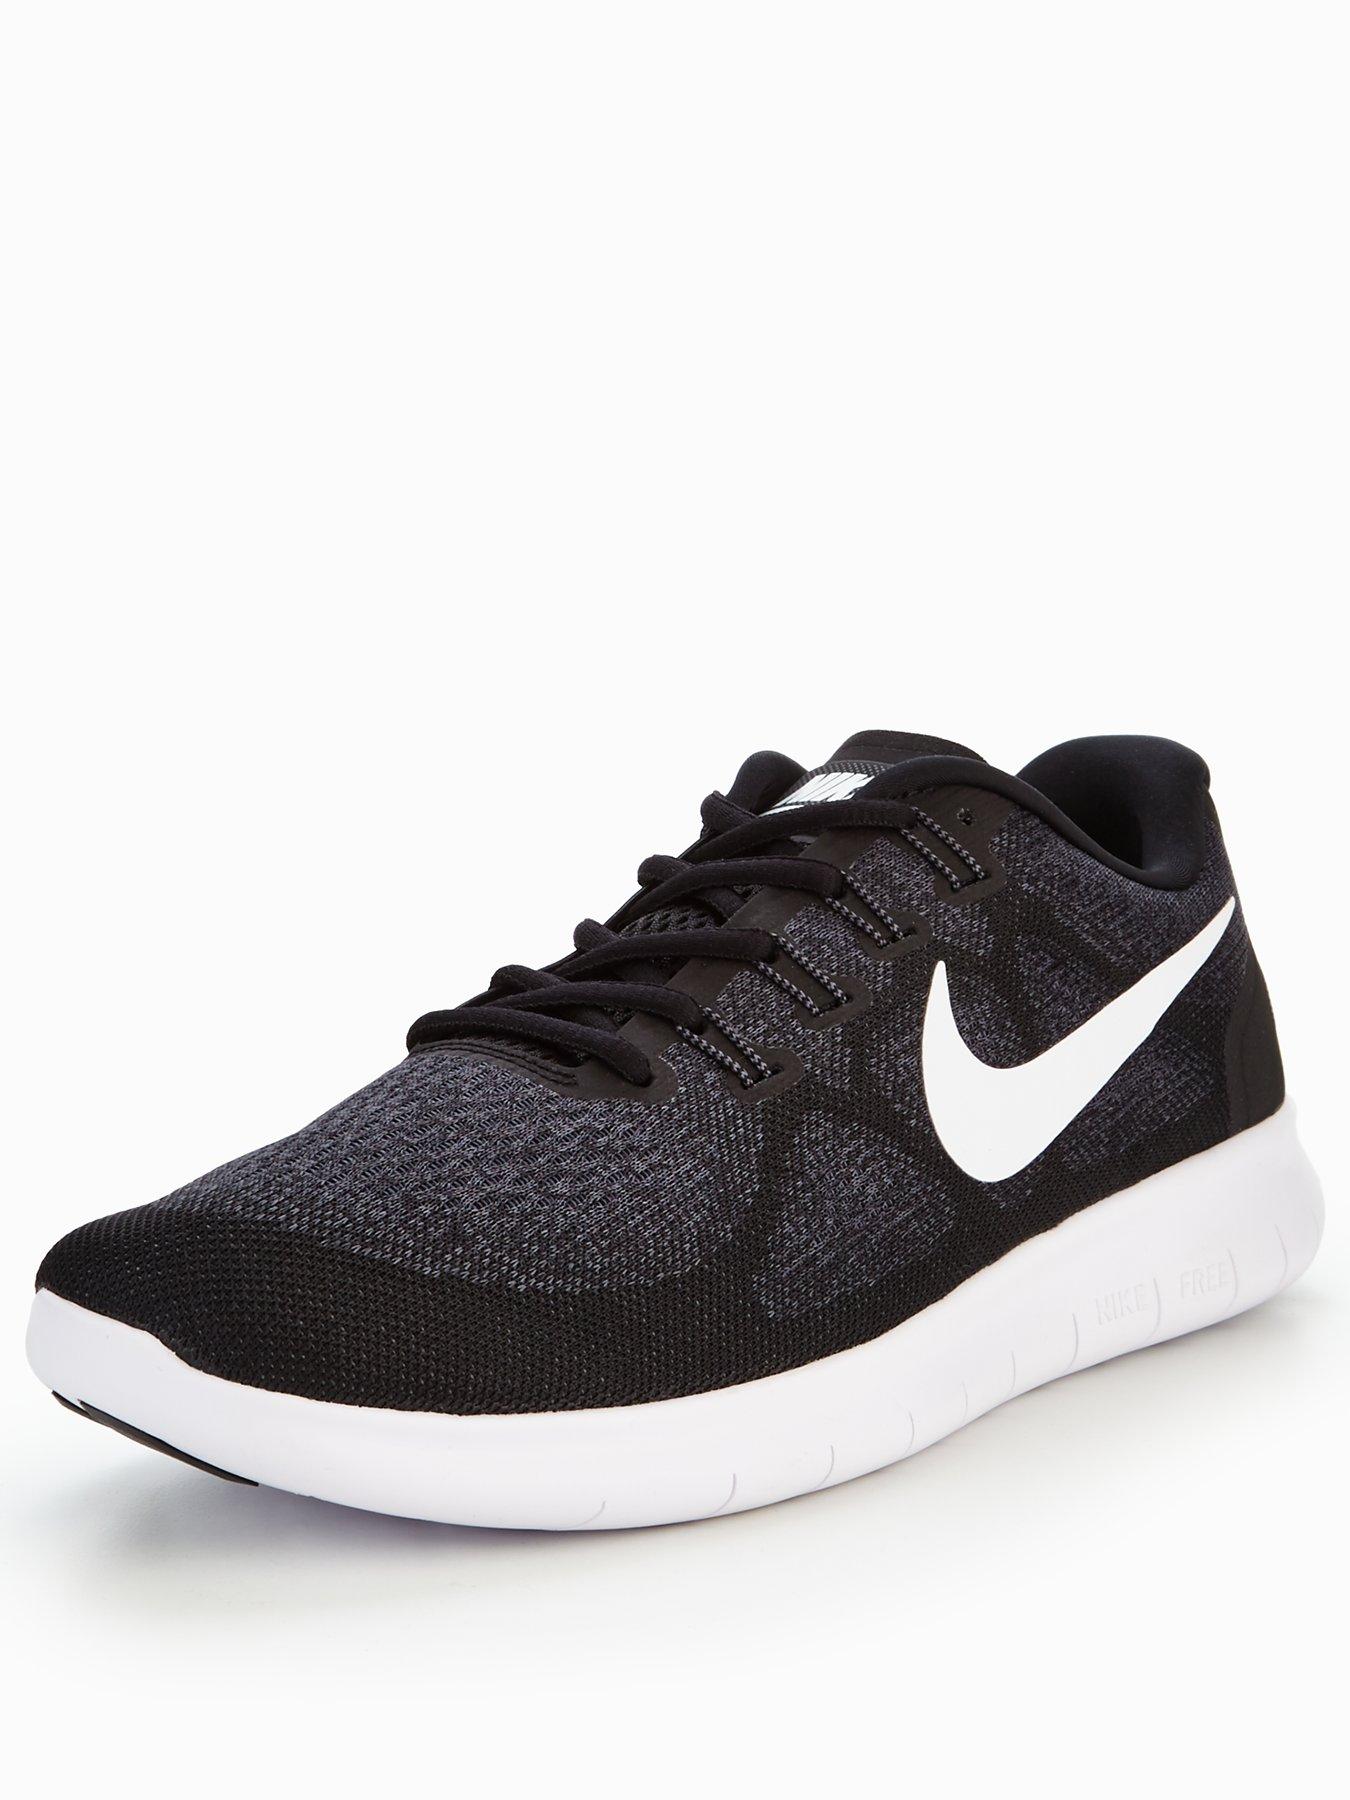 Nike Free RN 2 - Black/White | littlewoods.com